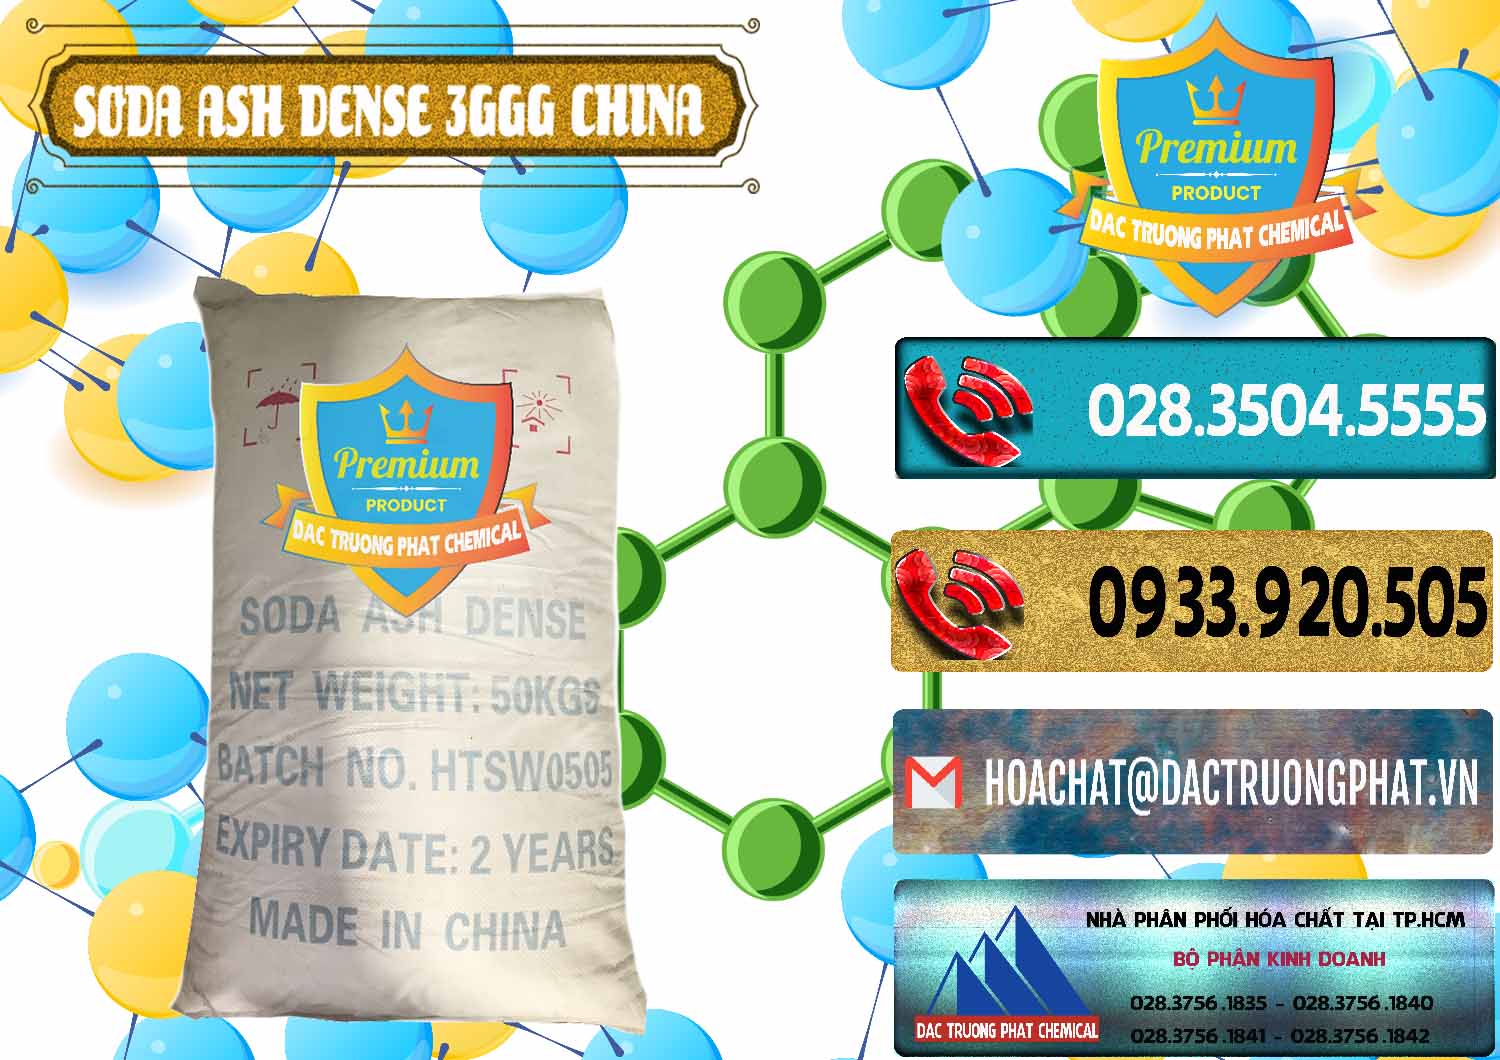 Cty bán ( cung ứng ) Soda Ash Dense - NA2CO3 3GGG Trung Quốc China - 0335 - Nơi cung cấp ( kinh doanh ) hóa chất tại TP.HCM - hoachatdetnhuom.com